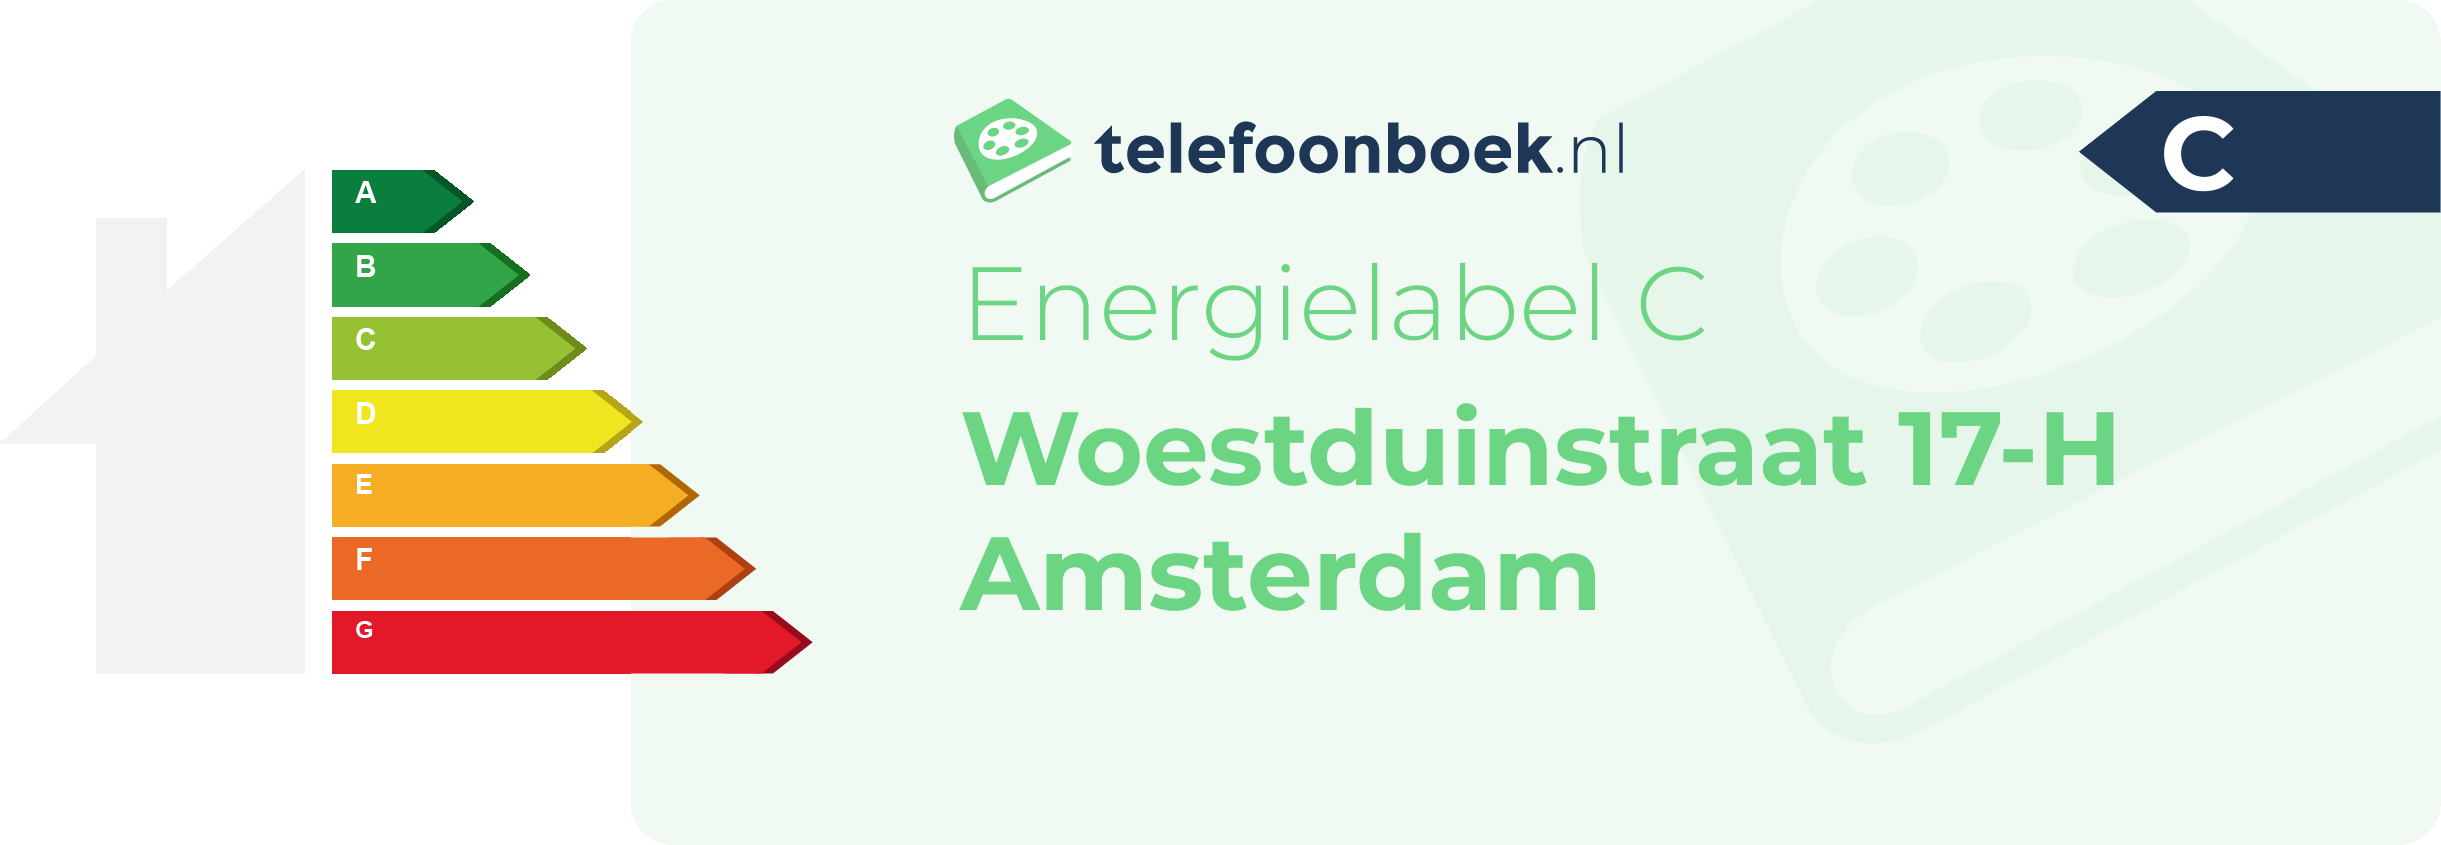 Energielabel Woestduinstraat 17-H Amsterdam